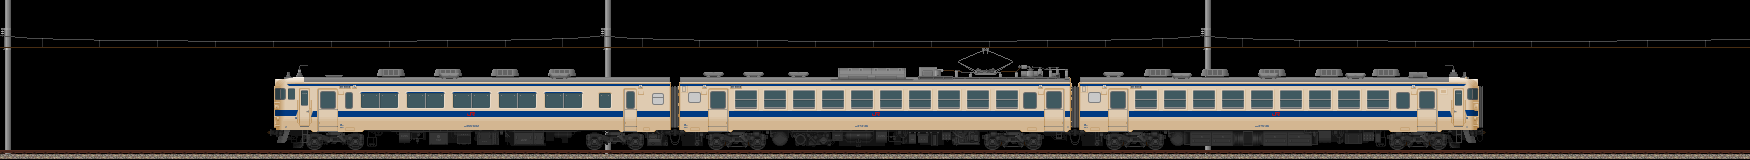 九州の475系電車(2011/11/26更新)